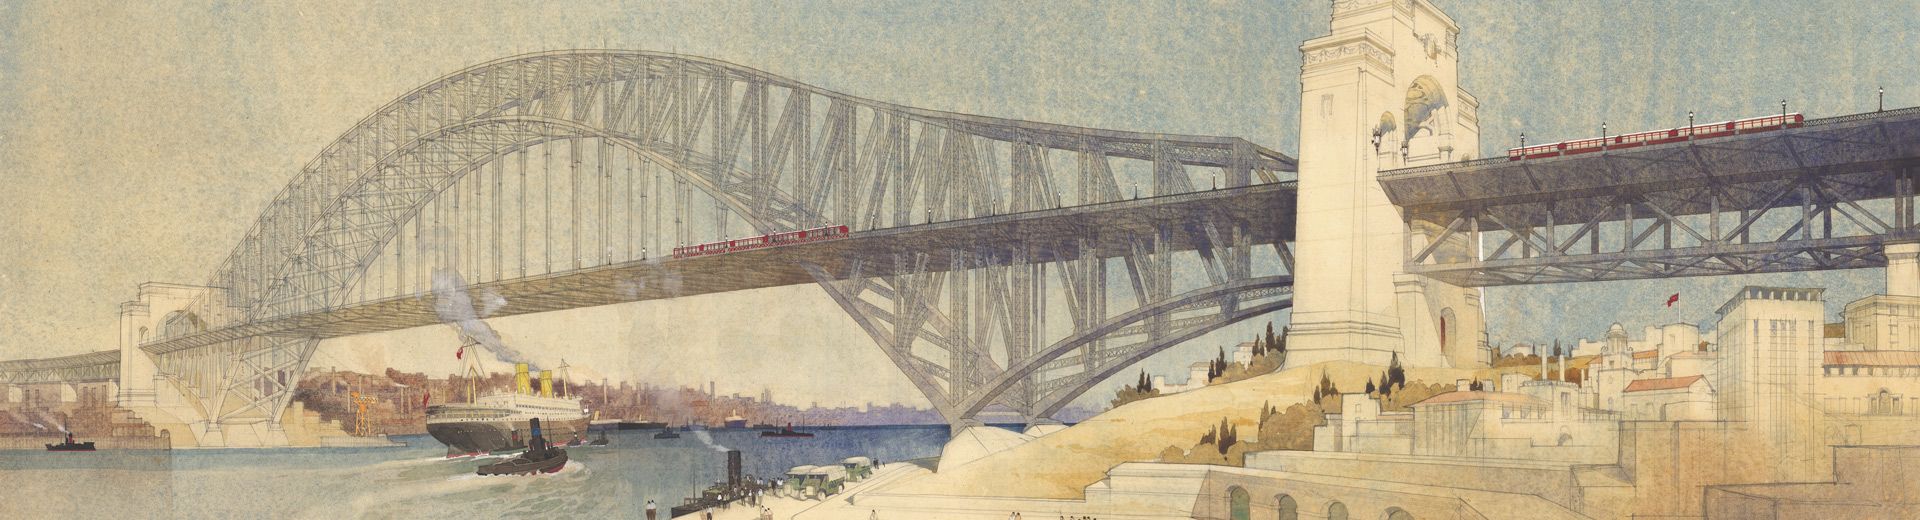 c.1923 colour sketch of alternative cantilever Sydney Harbour Bridge